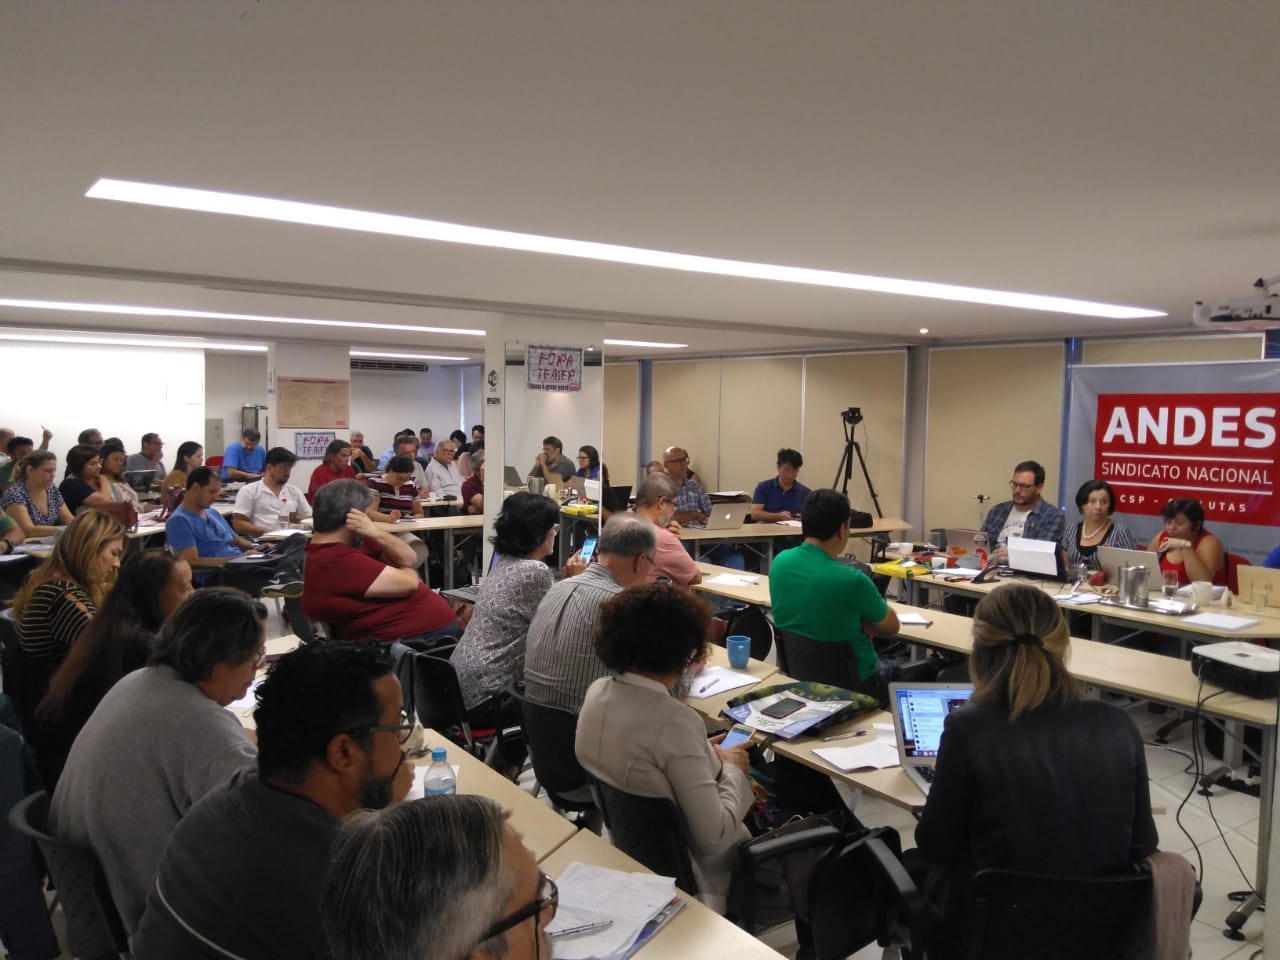 Andes realiza seminário sobre reorganização da classe trabalhadora e Aspuv participa com uma representante